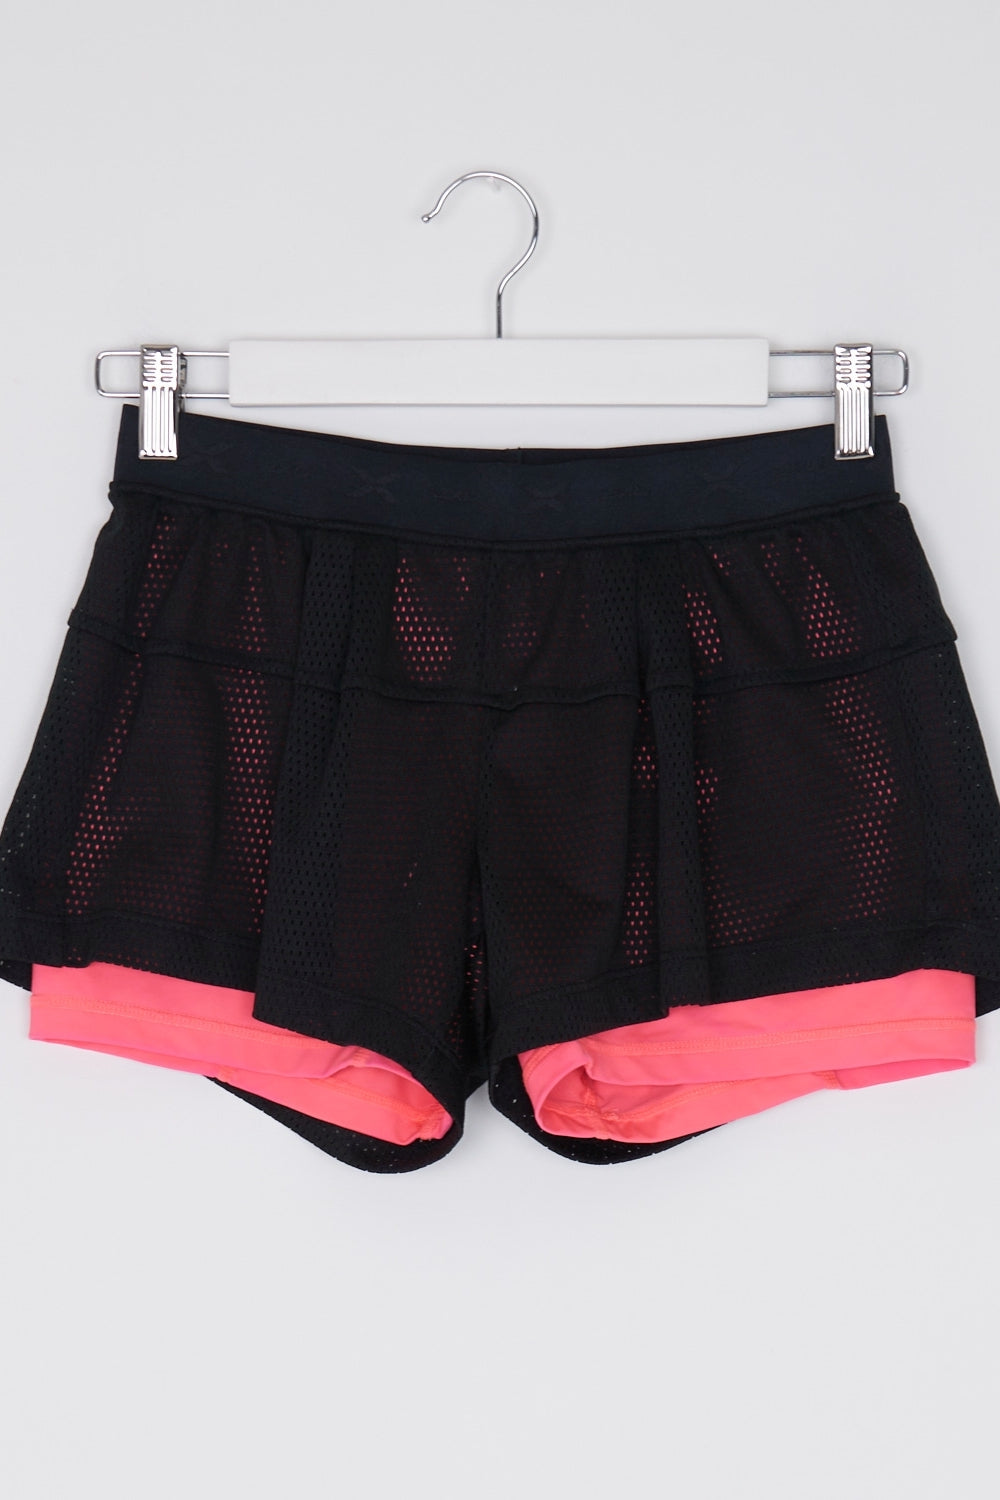 2XU Black And Pink Active Shorts S